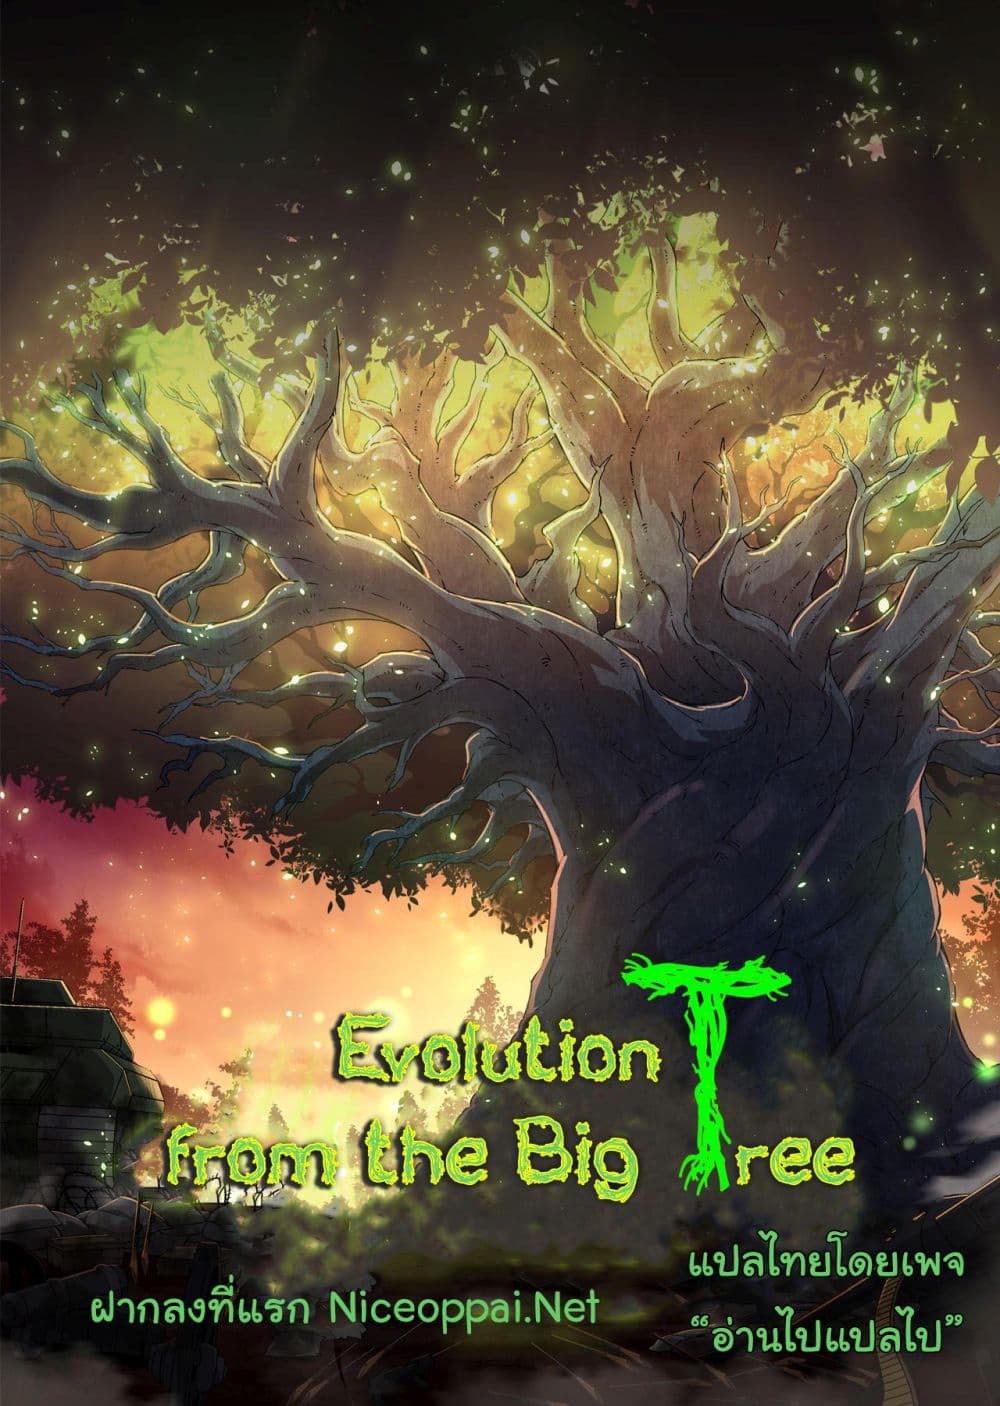 Evolution from the Big Tree Ã Â¸â€¢Ã Â¸Â­Ã Â¸â„¢Ã Â¸â€”Ã Â¸ÂµÃ Â¹Ë† 12 (66)